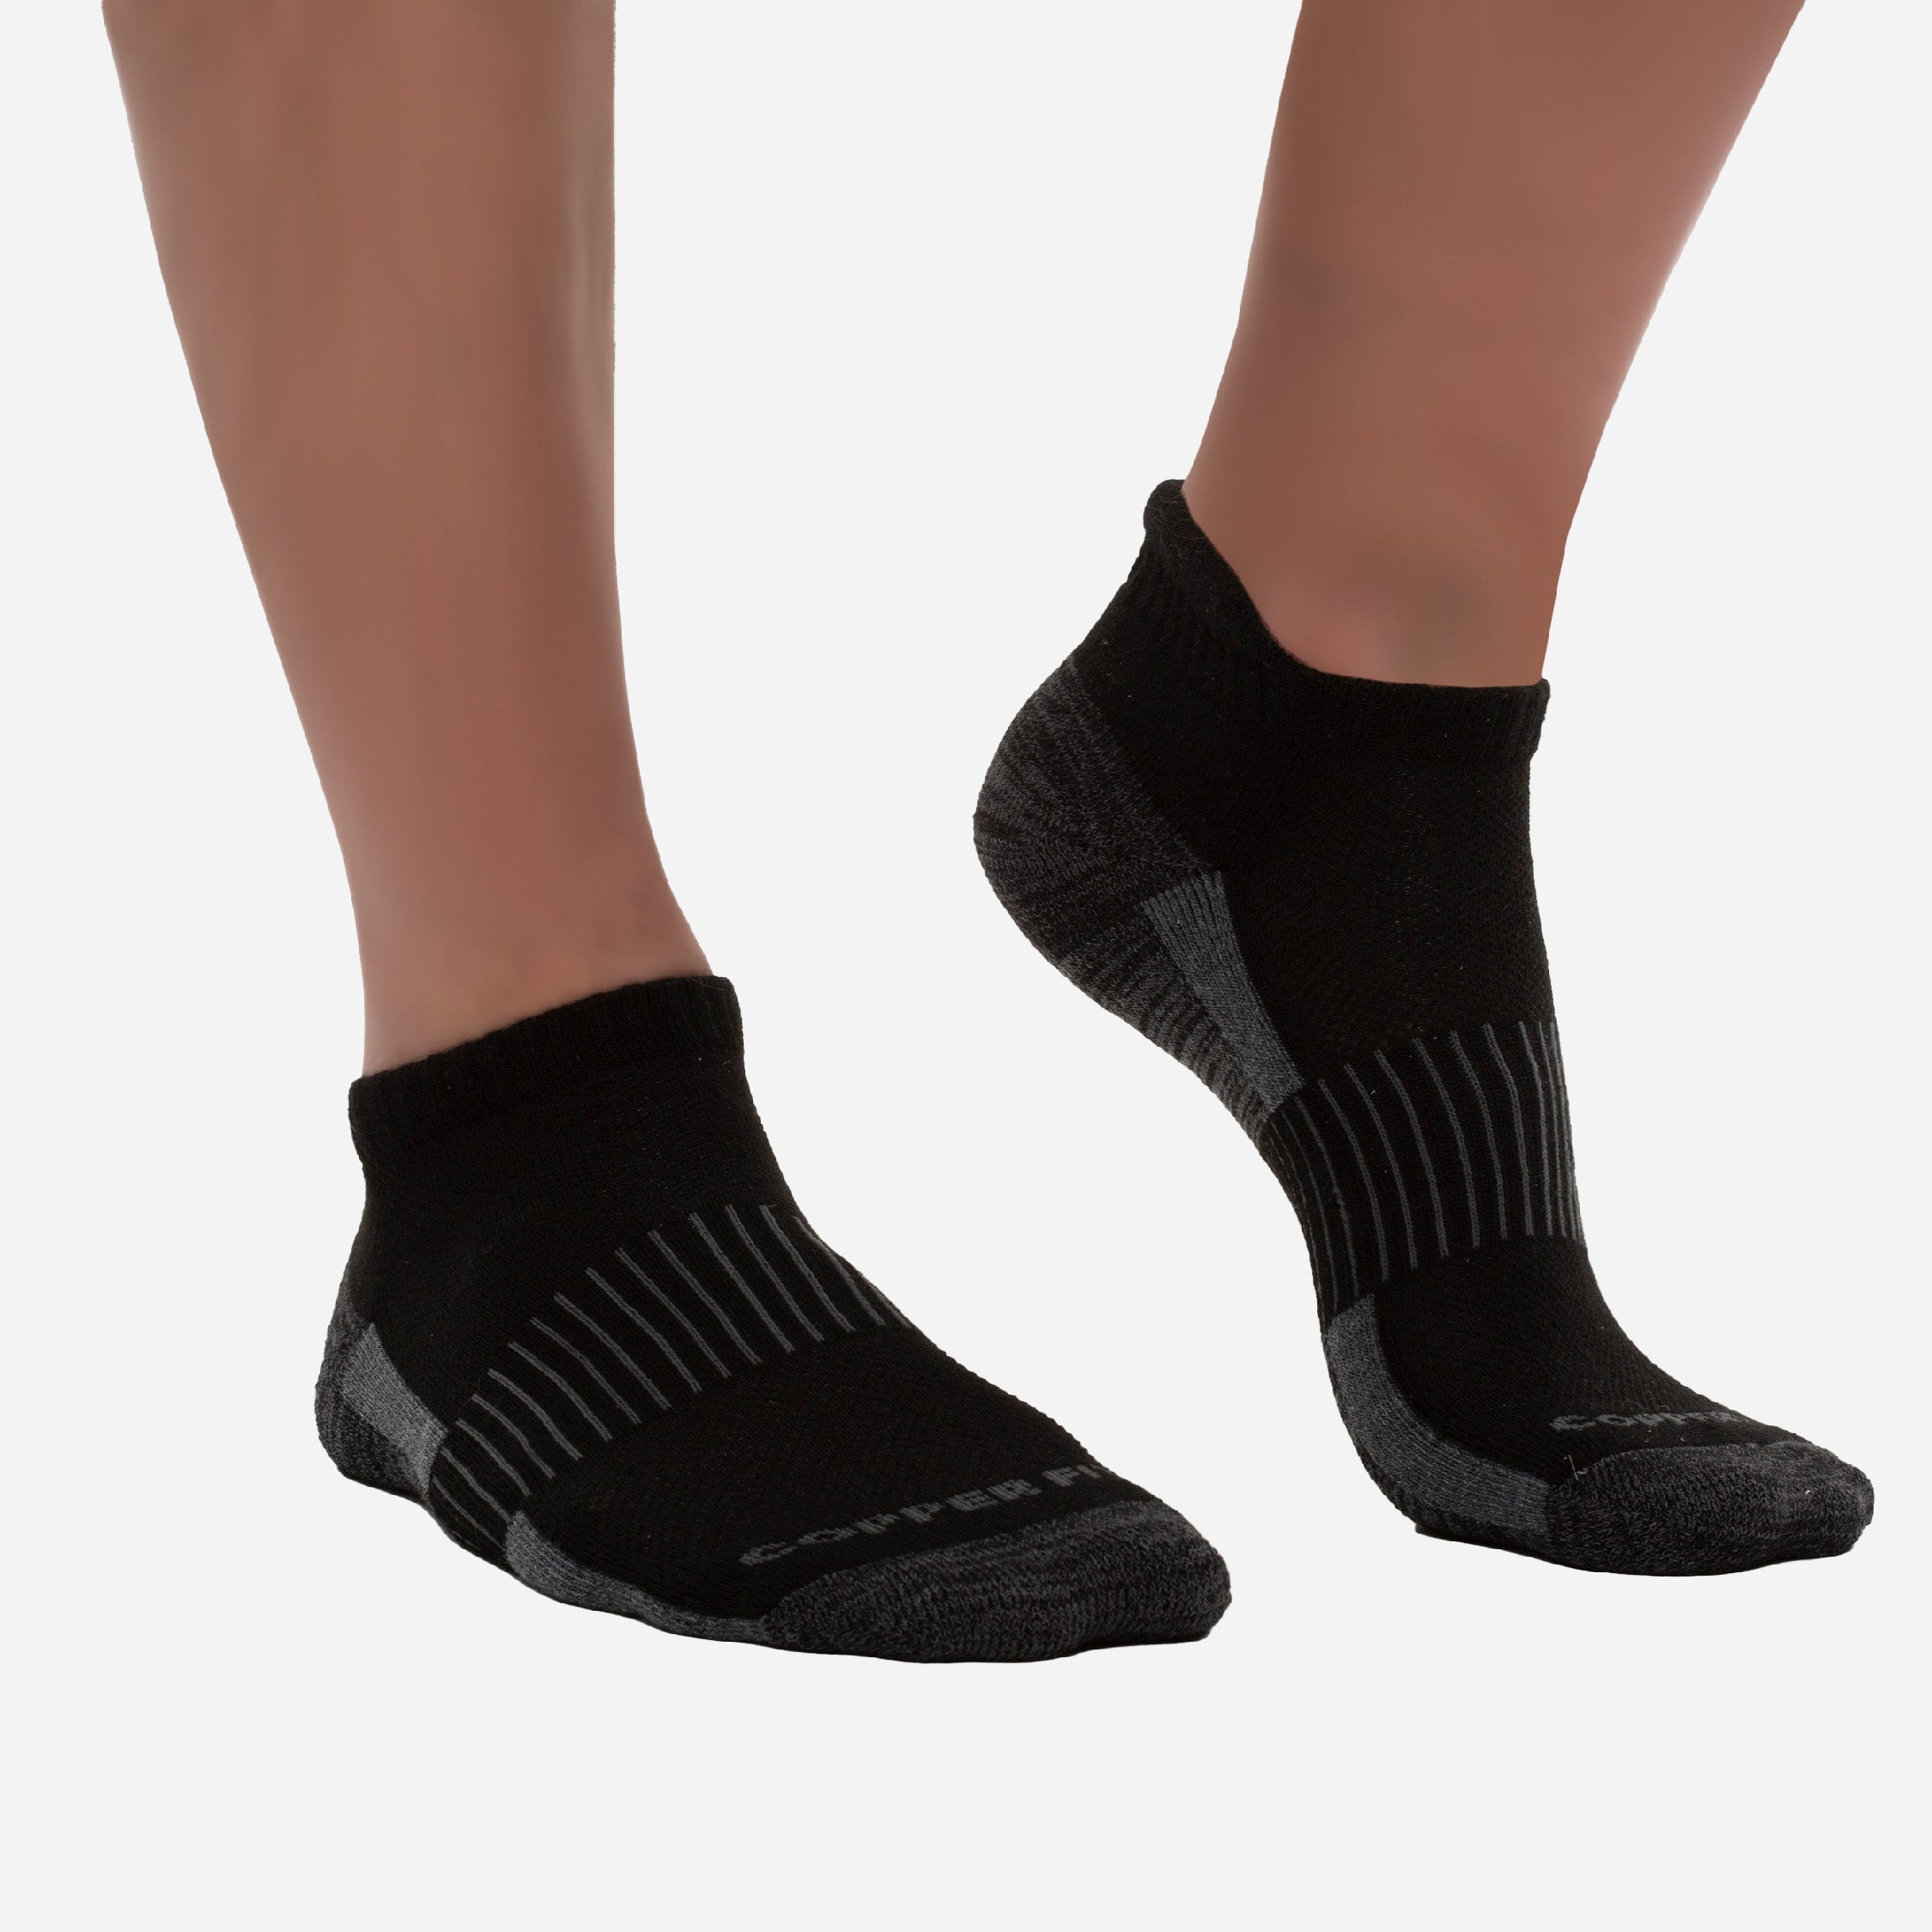 Copper Fit Unisex Polyester Blend Socks (6-Pack) in the Socks ...